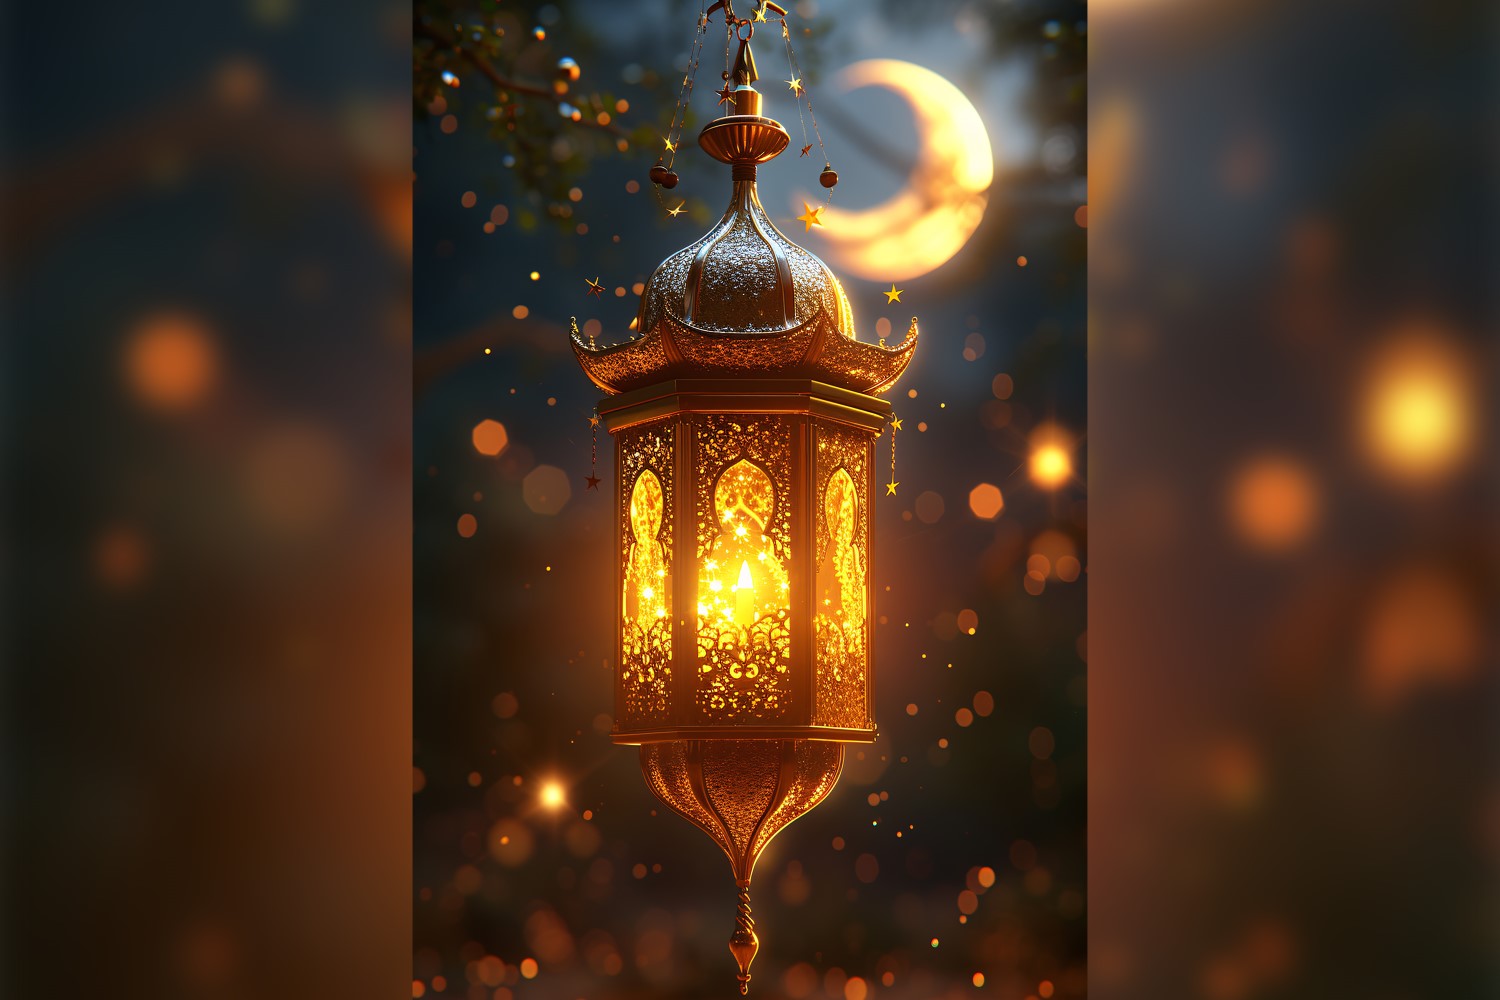 Ramadan Kareem greeting card poster design with lantern & bokeh with moon